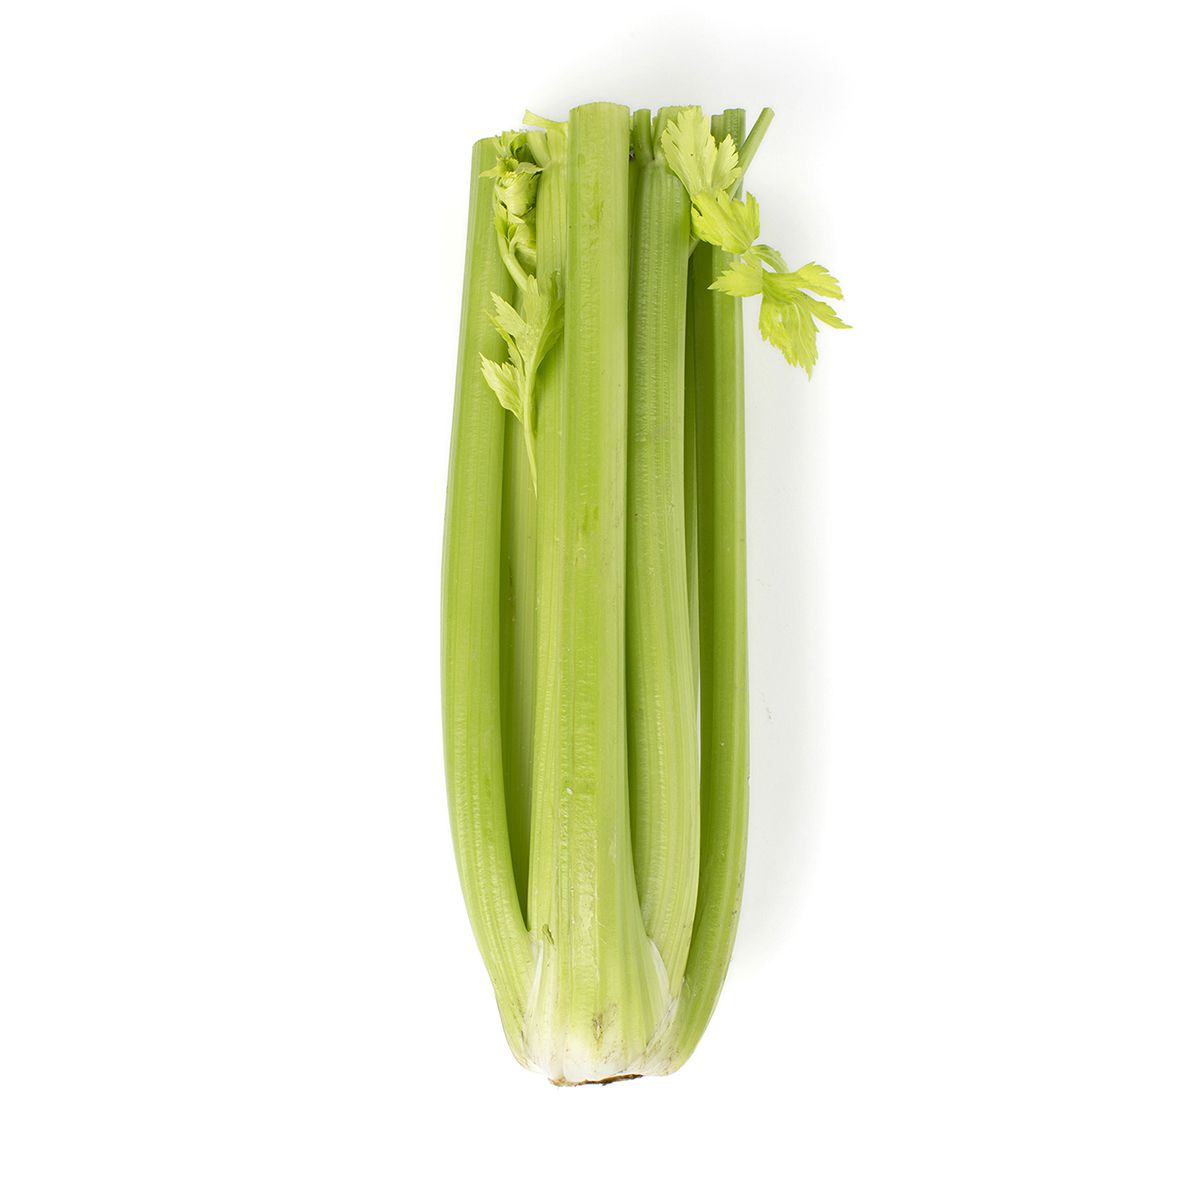 BoxNCase Celery 3 CT